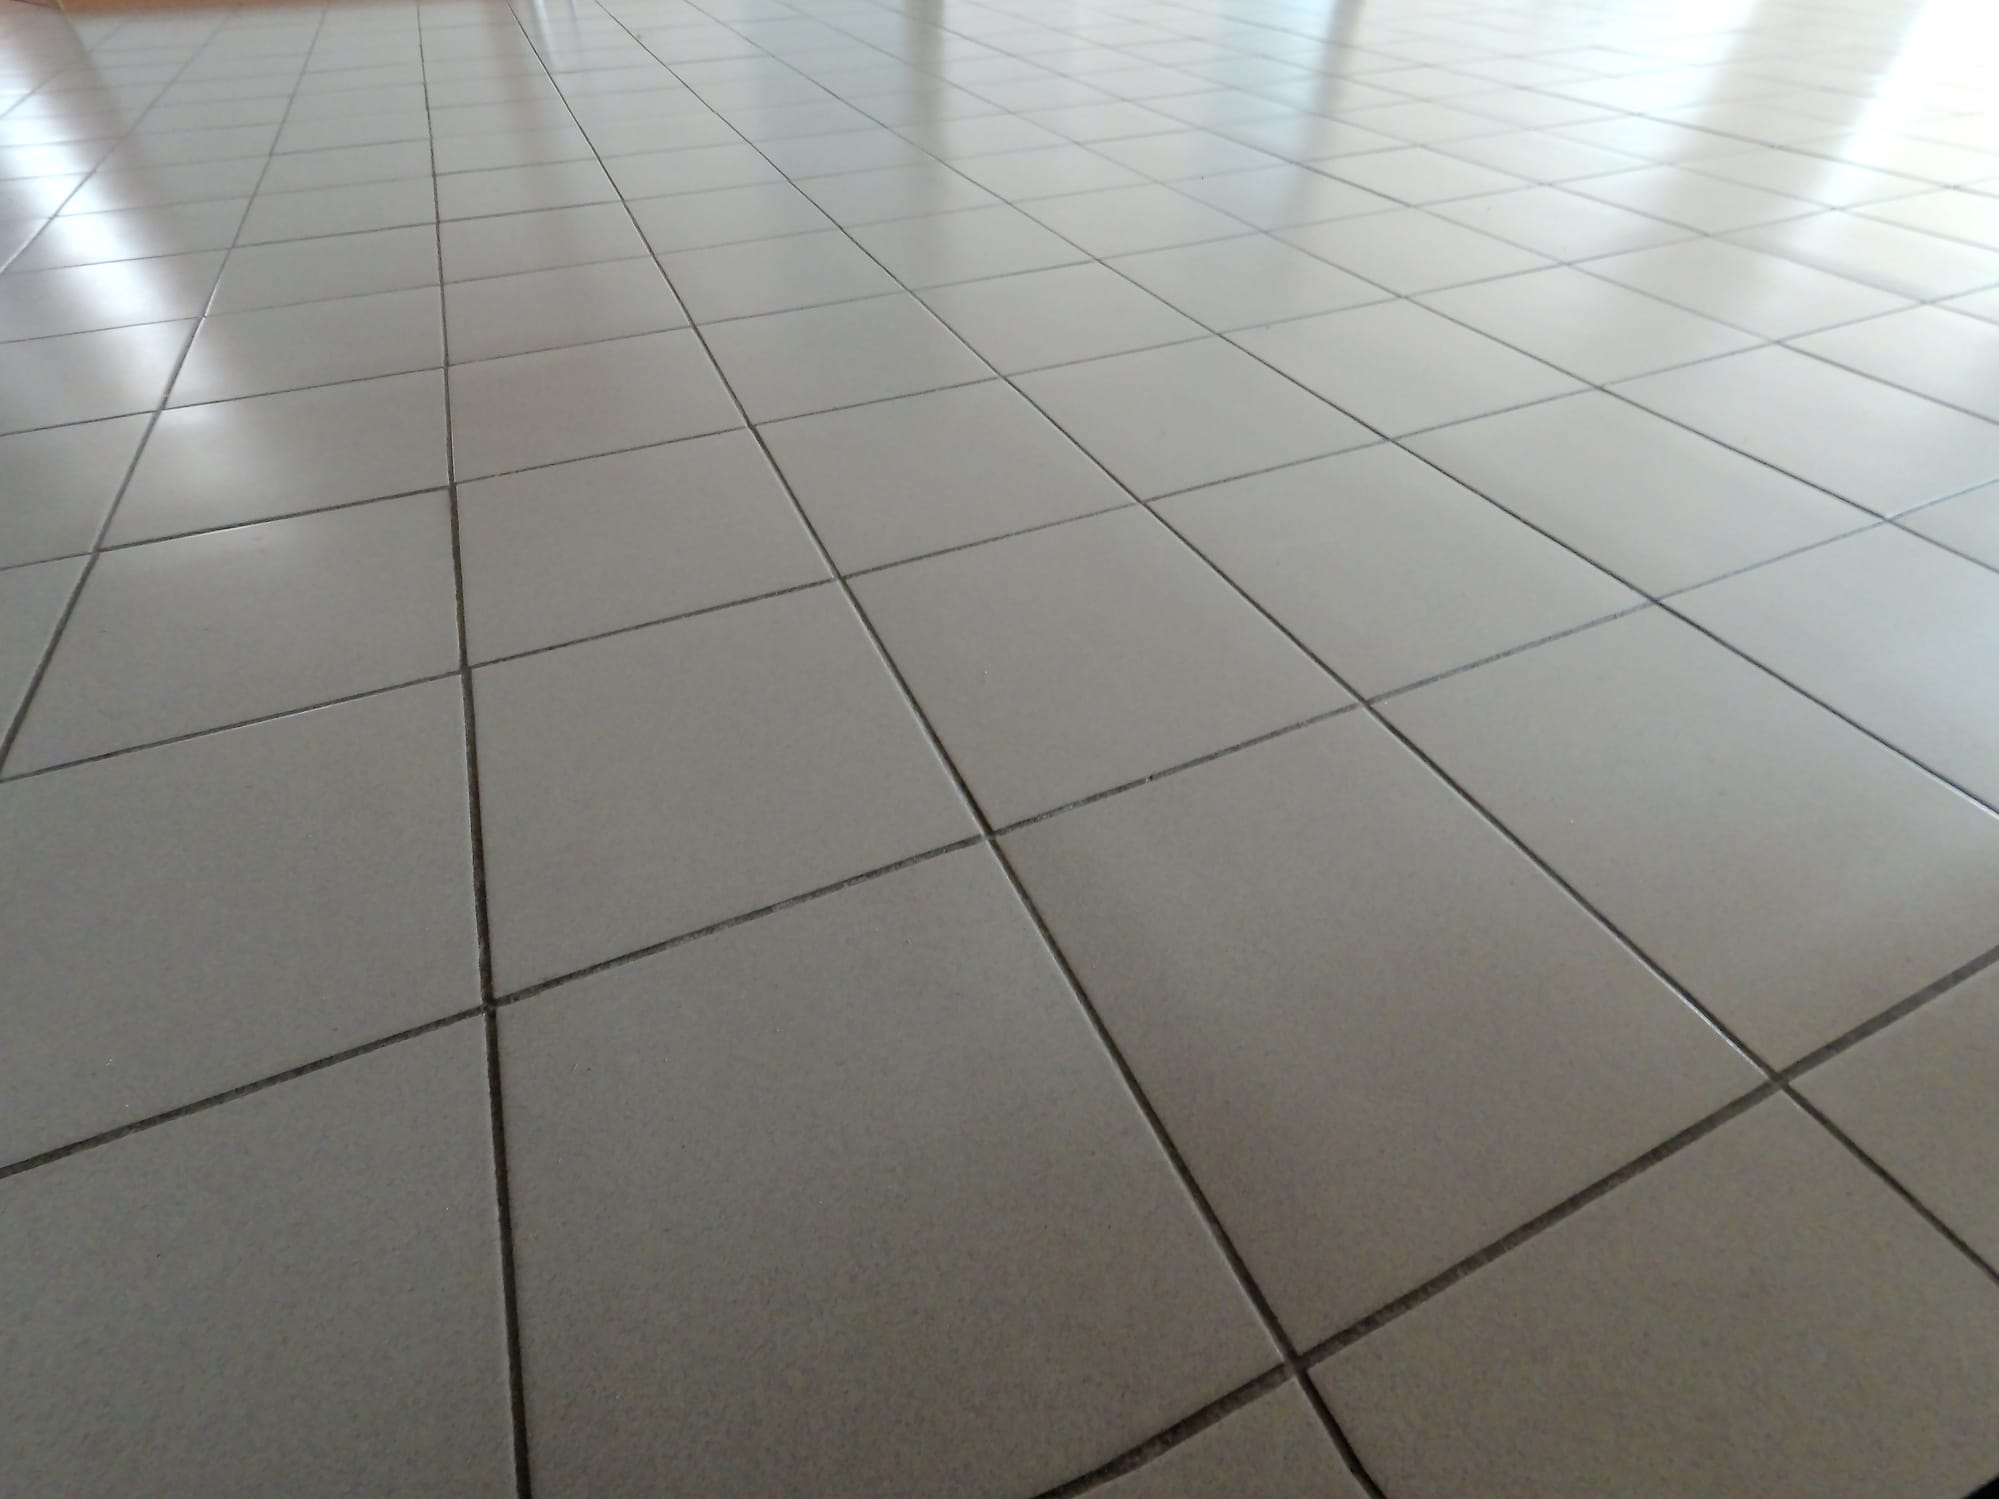 Non-slip floors